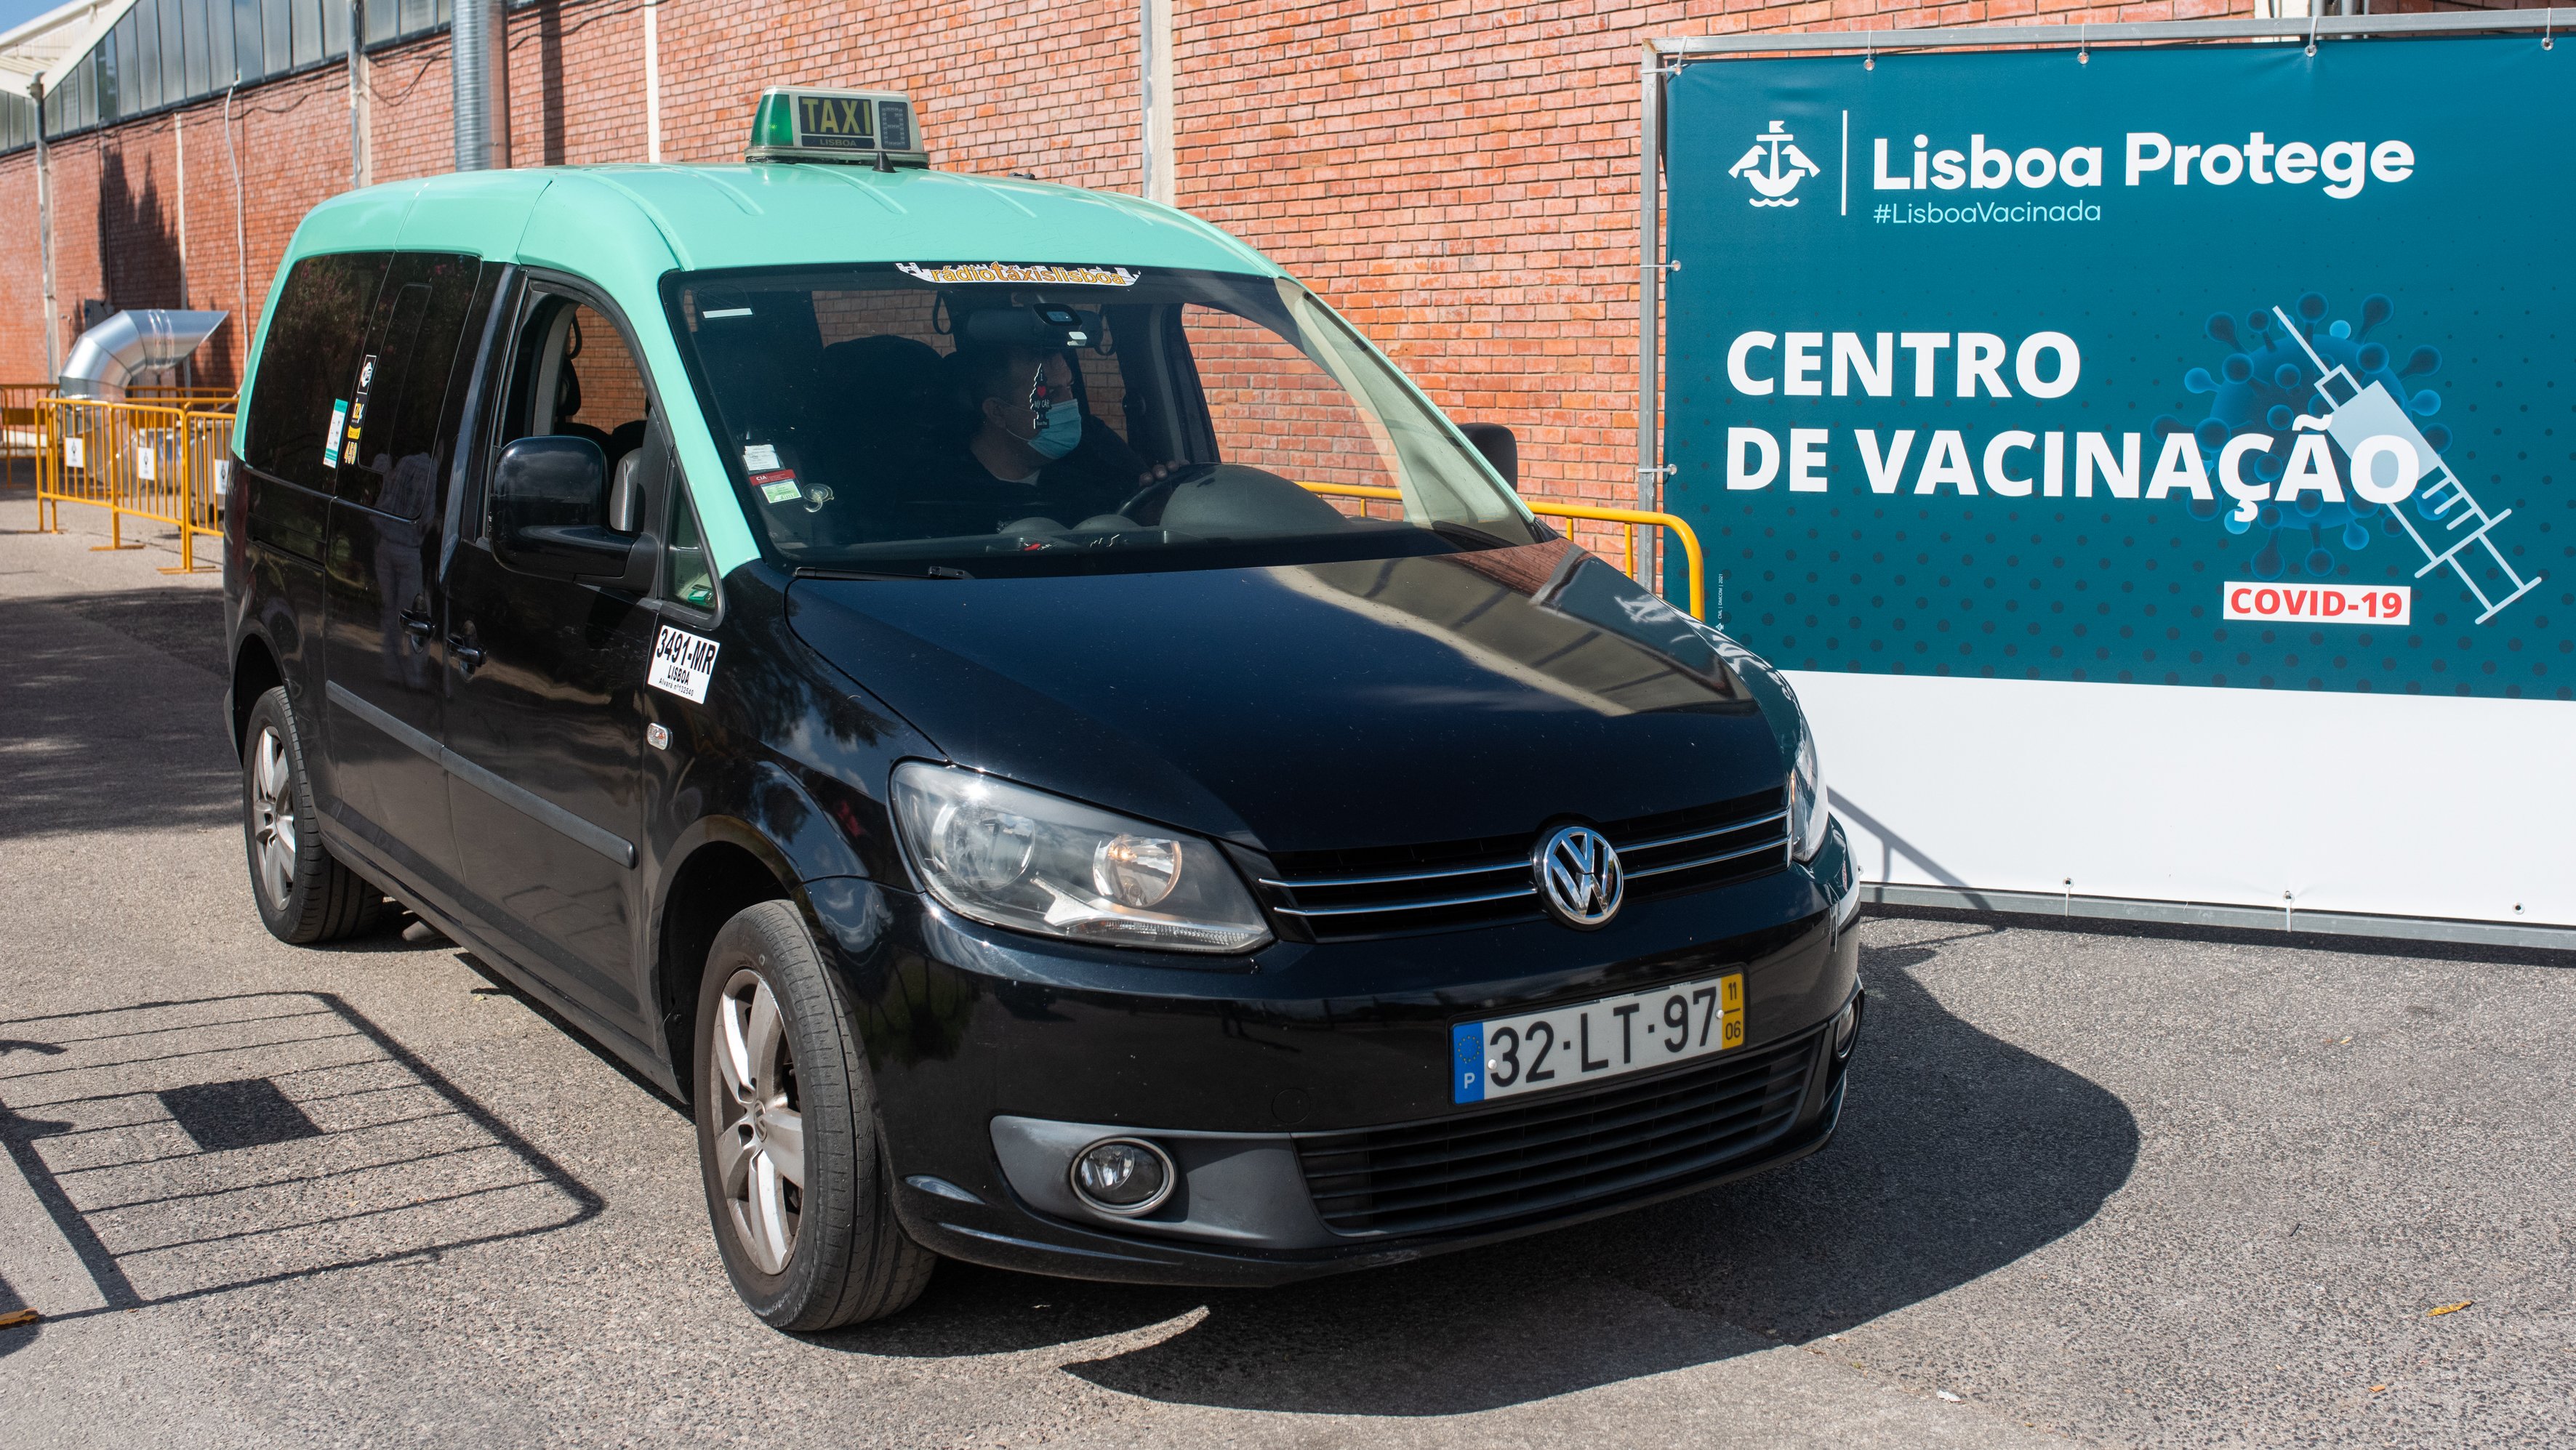 Táxi em Portugal durante a pandemia da Covid-19